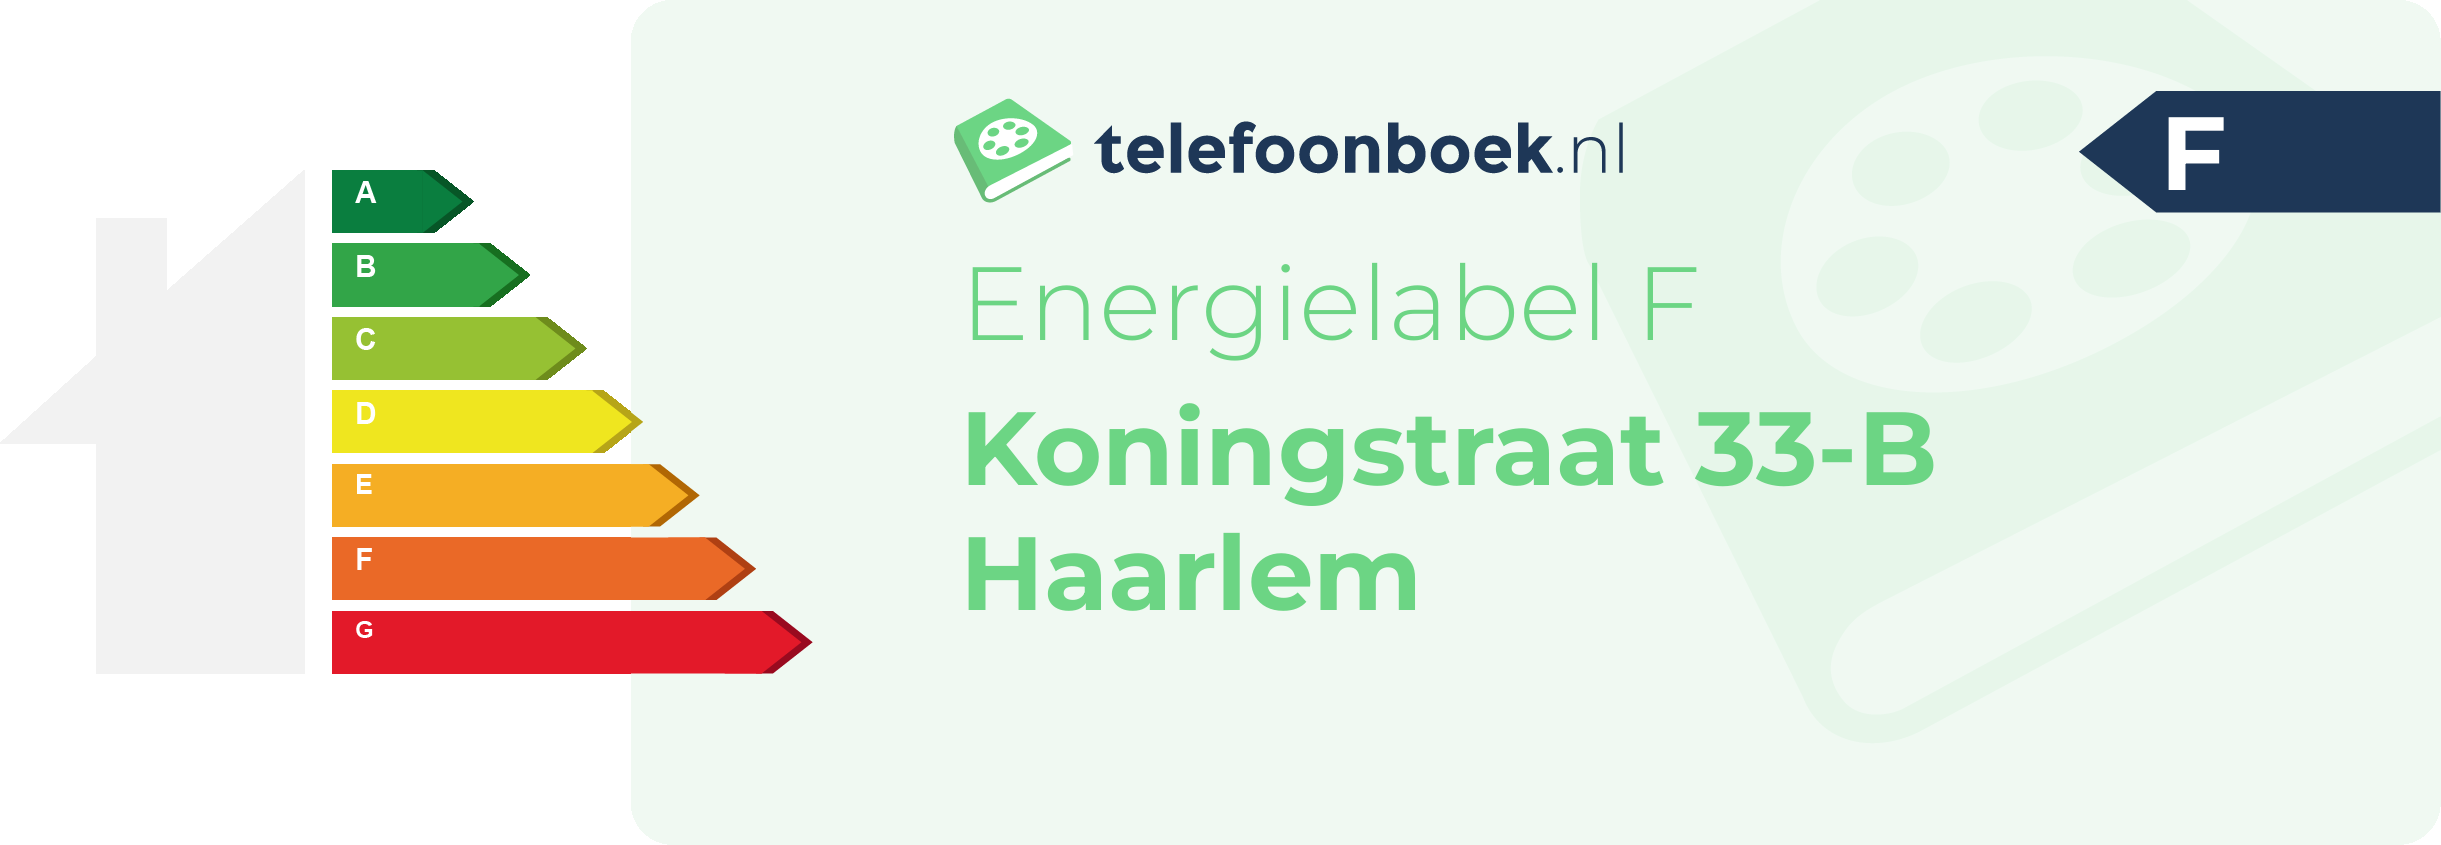 Energielabel Koningstraat 33-B Haarlem